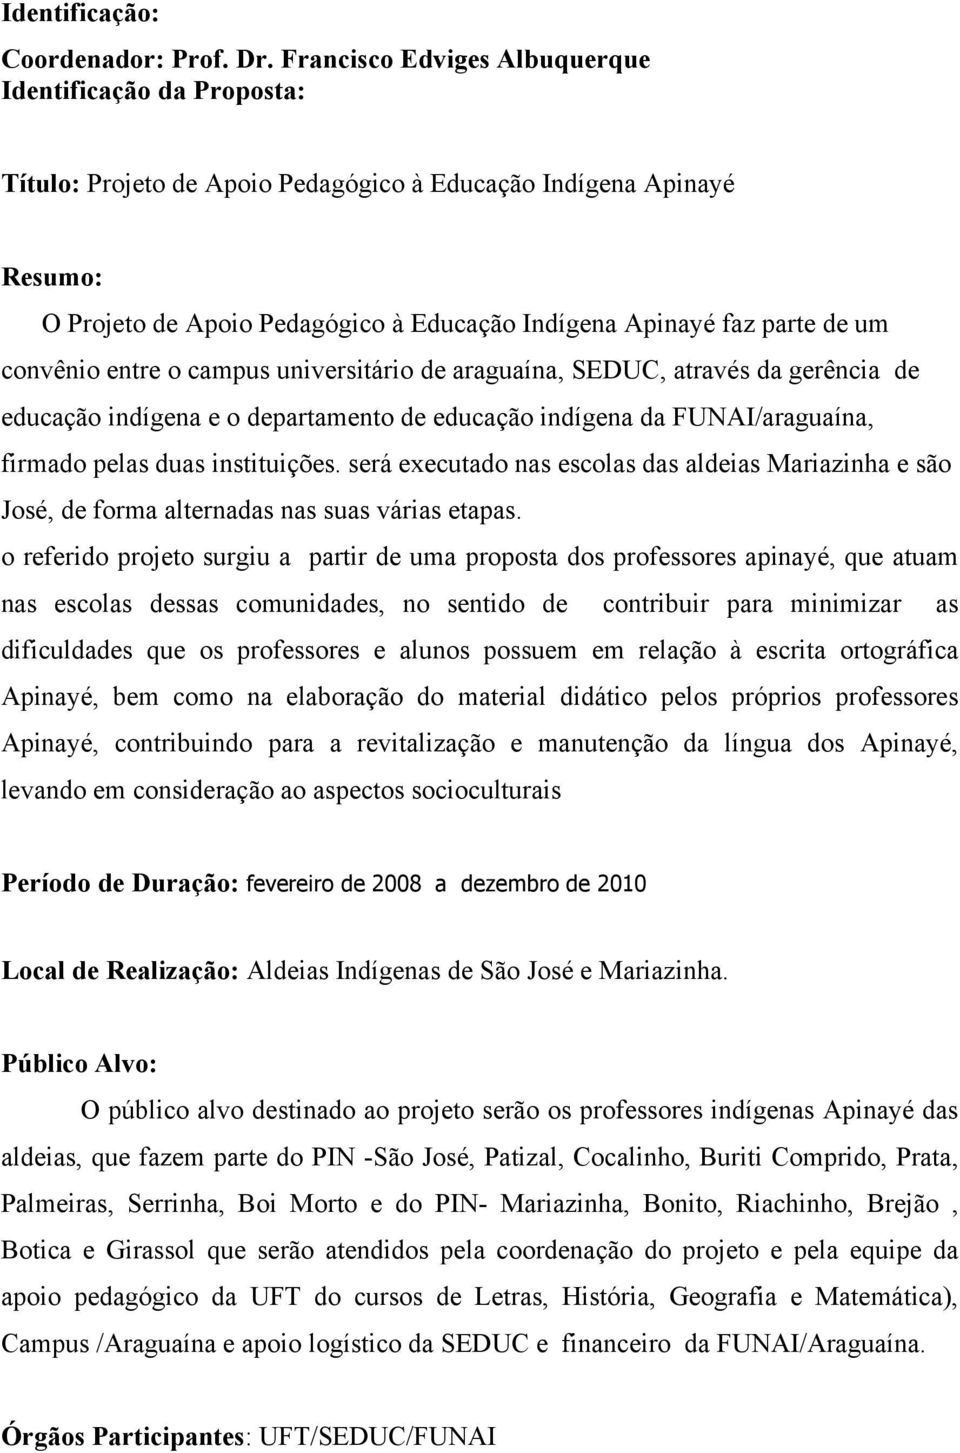 um convênio entre o campus universitário de araguaína, SEDUC, através da gerência de educação indígena e o departamento de educação indígena da FUNAI/araguaína, firmado pelas duas instituições.